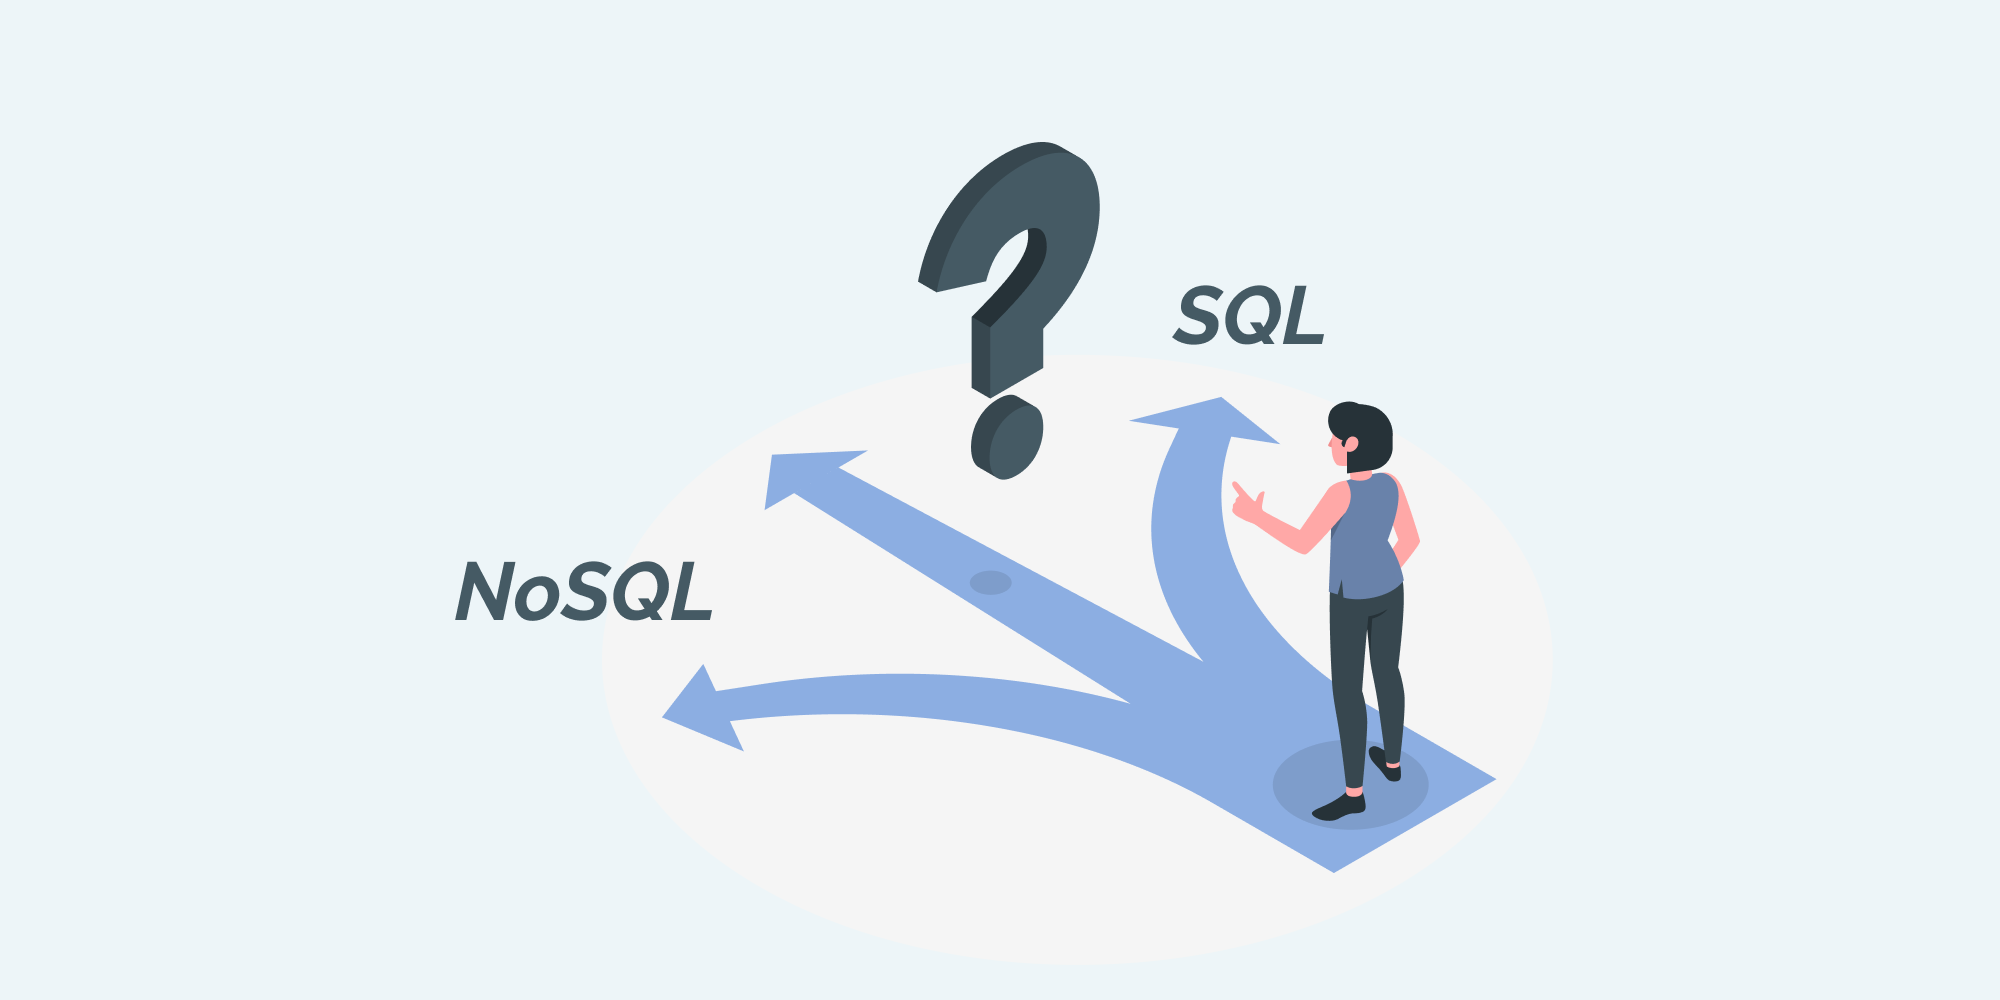 SQL или NoSQL? А также самые сложные SELECT-запросы